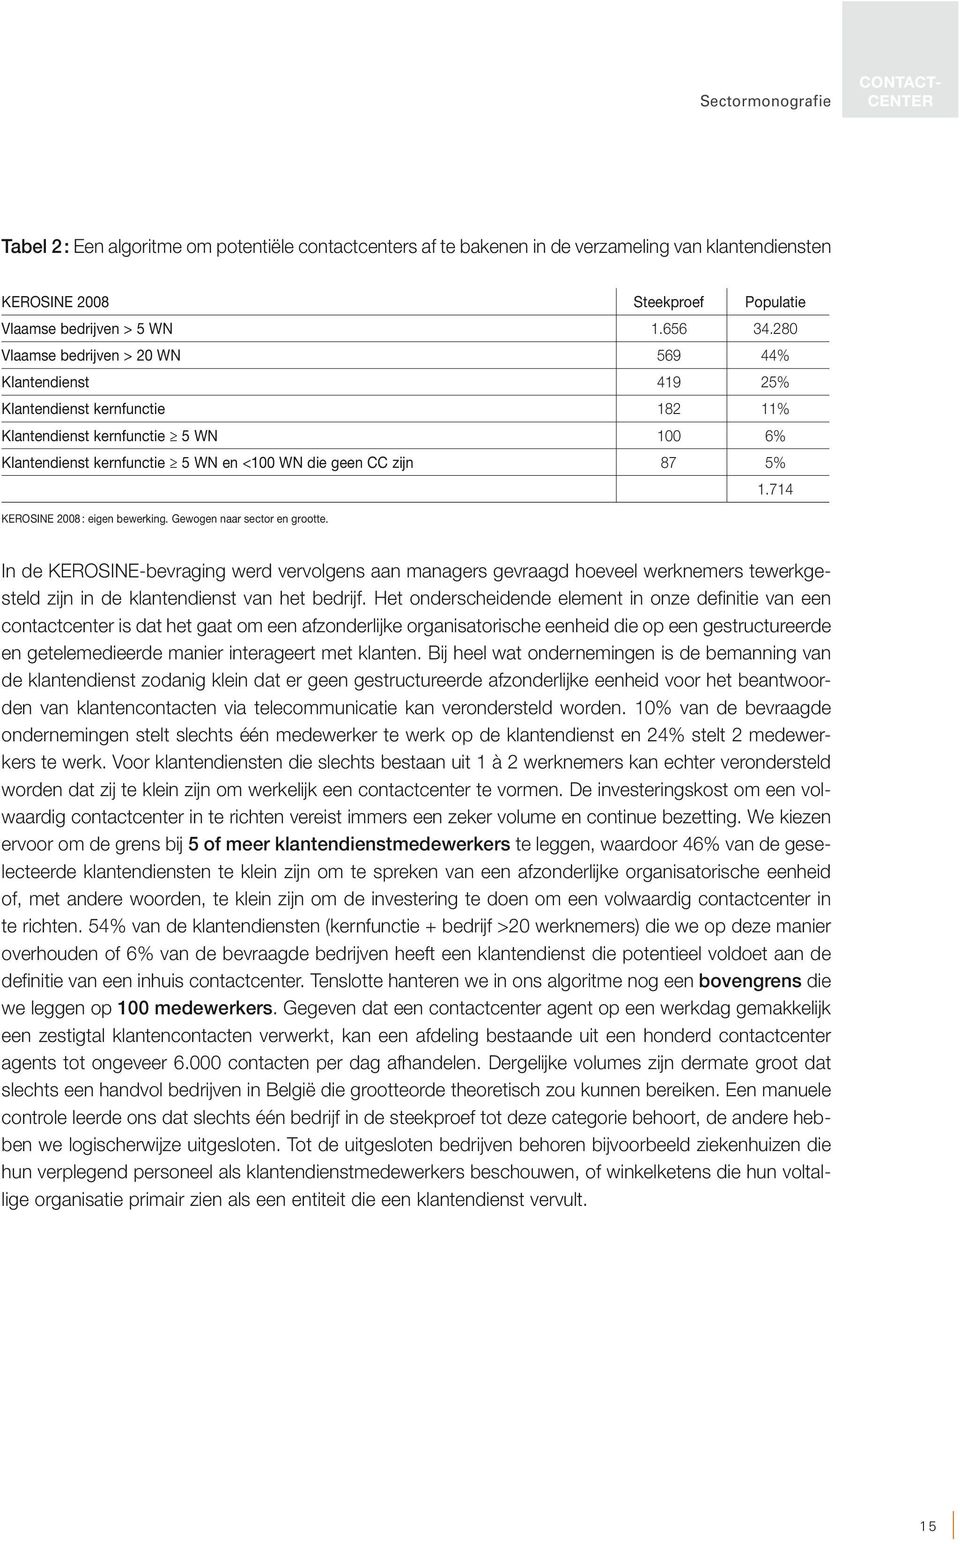 280 Vlaamse bedrijven > 20 WN 569 44% Klantendienst 419 25% Klantendienst kernfunctie 182 11% Klantendienst kernfunctie 5 WN 100 6% Klantendienst kernfunctie 5 WN en <100 WN die geen CC zijn 87 5% 1.